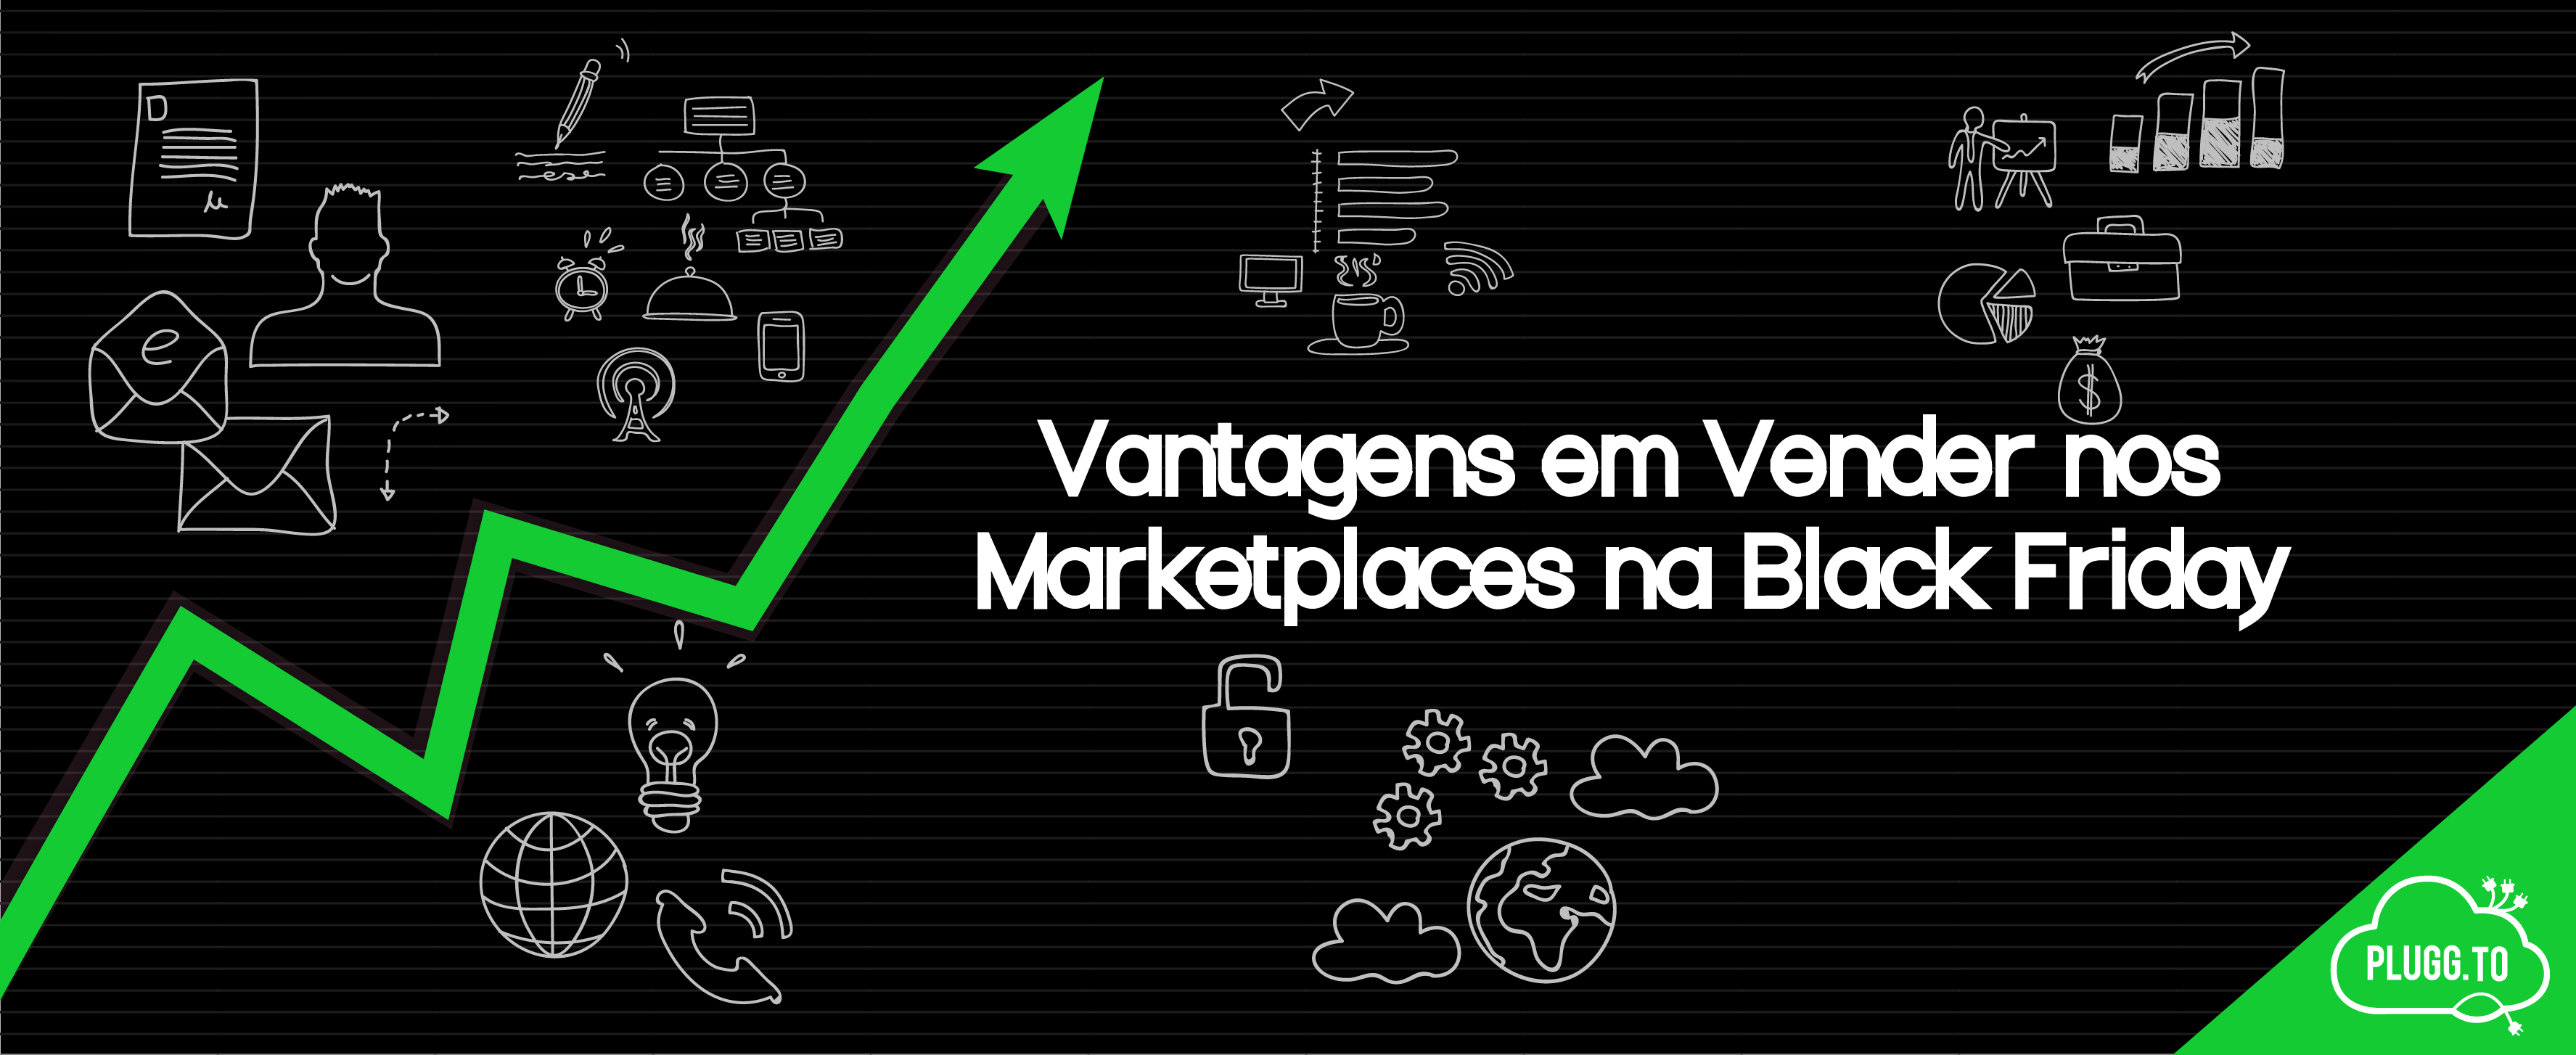 Você está visualizando atualmente Vantagens em Vender nos Marketplaces na Black Friday